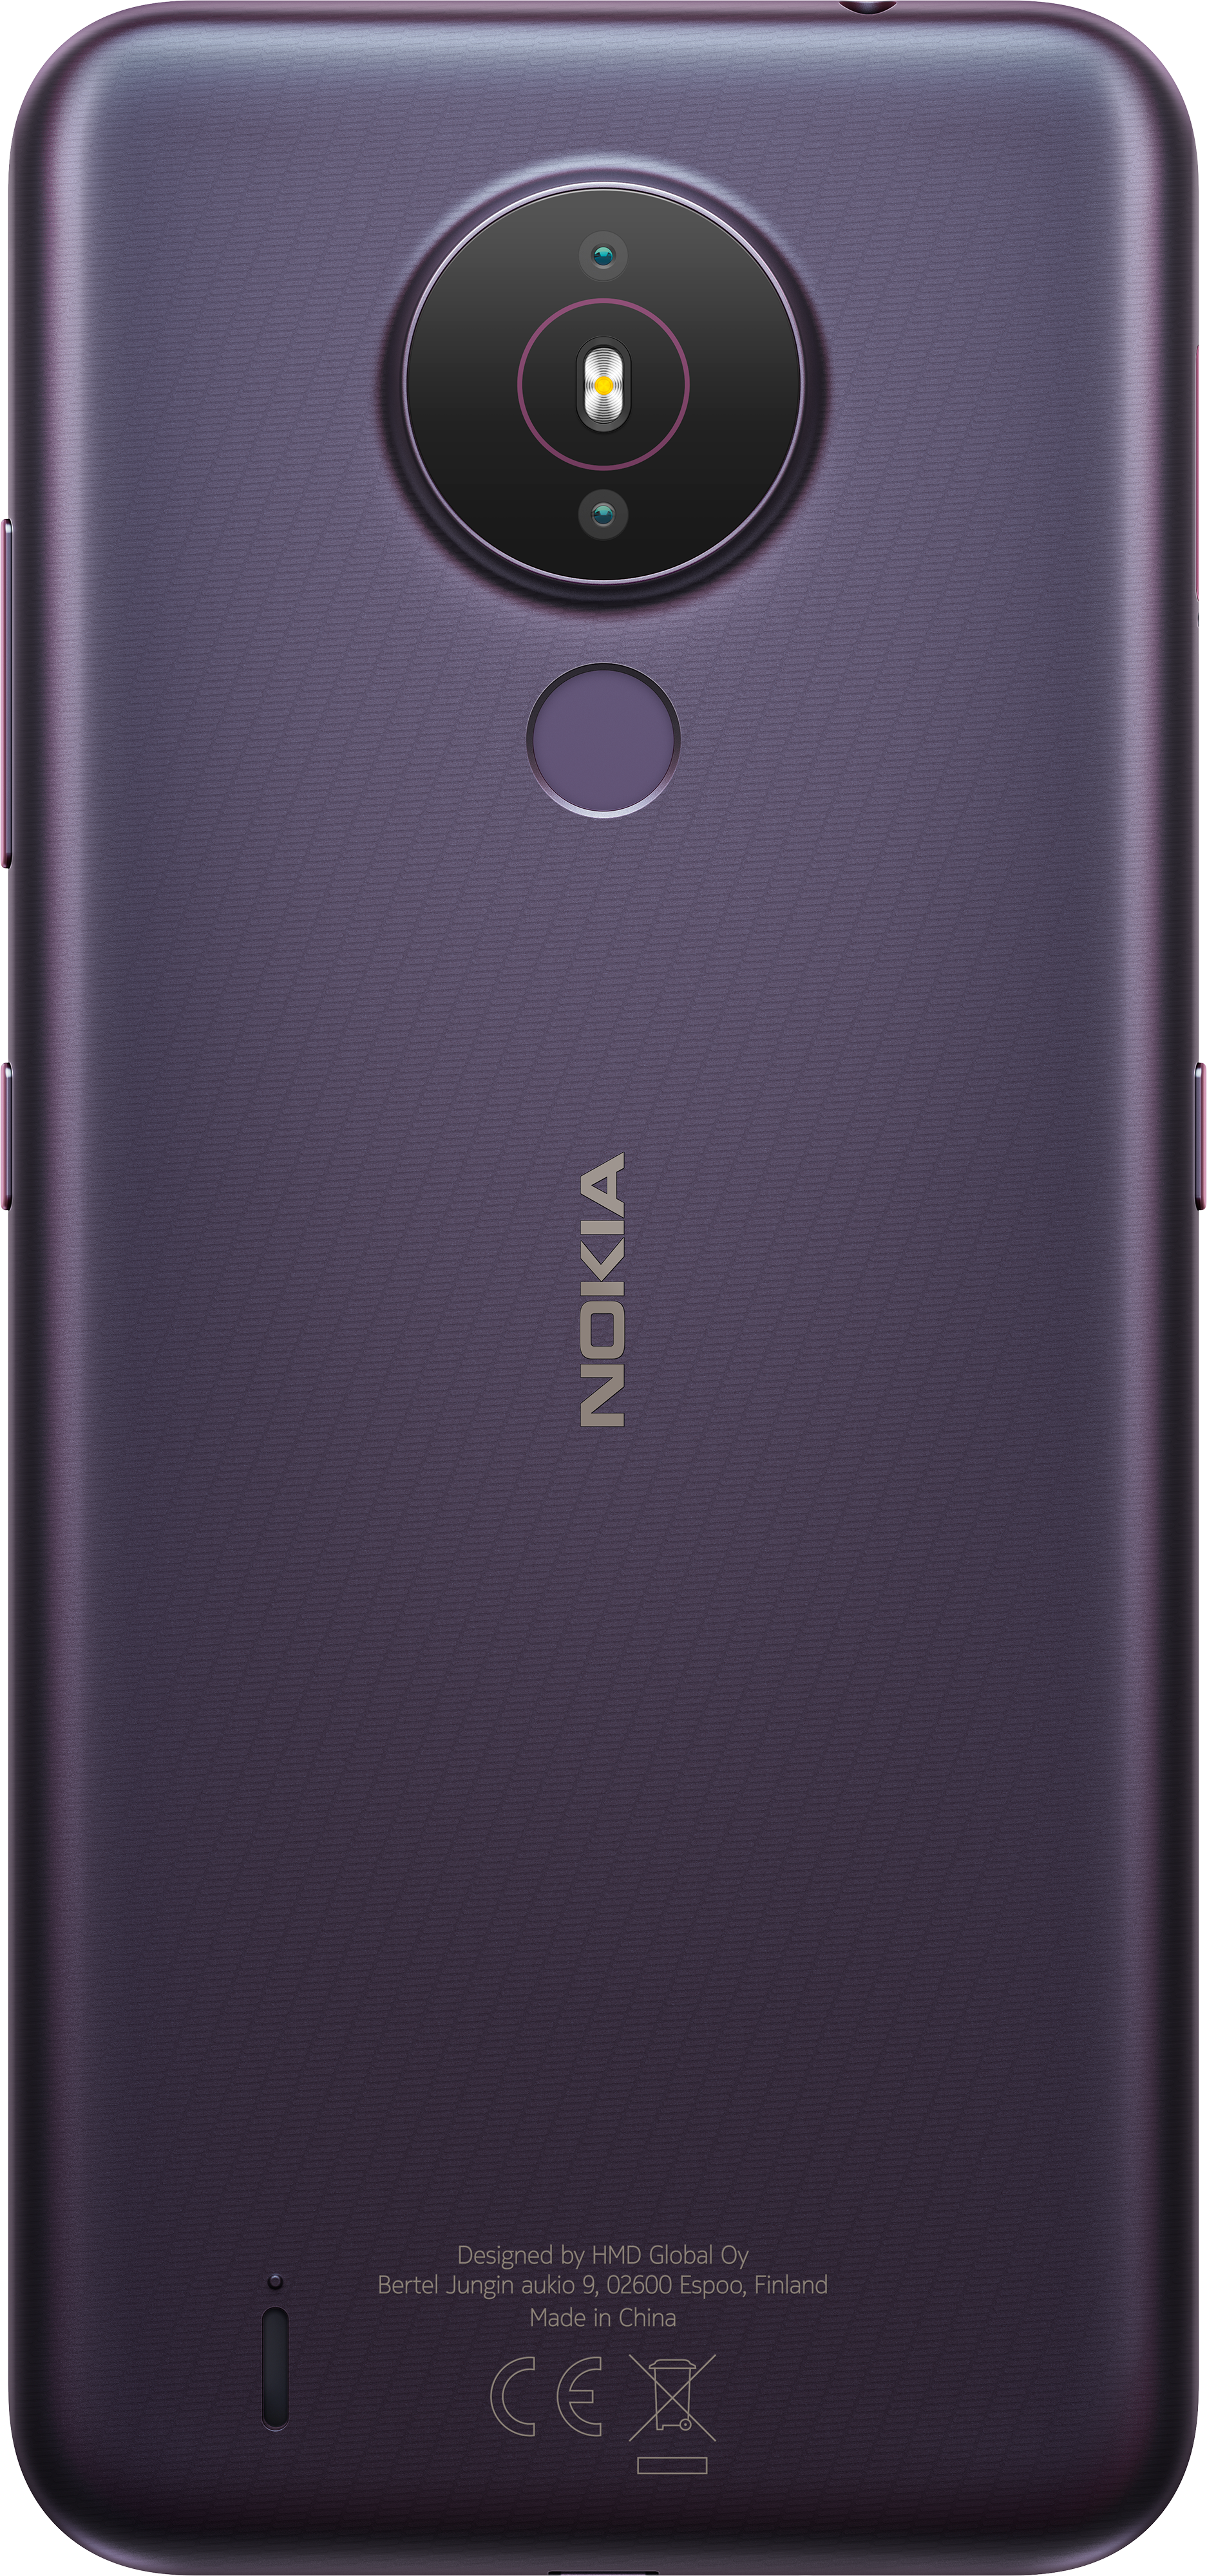 1.4 in ksa price nokia Nokia G100